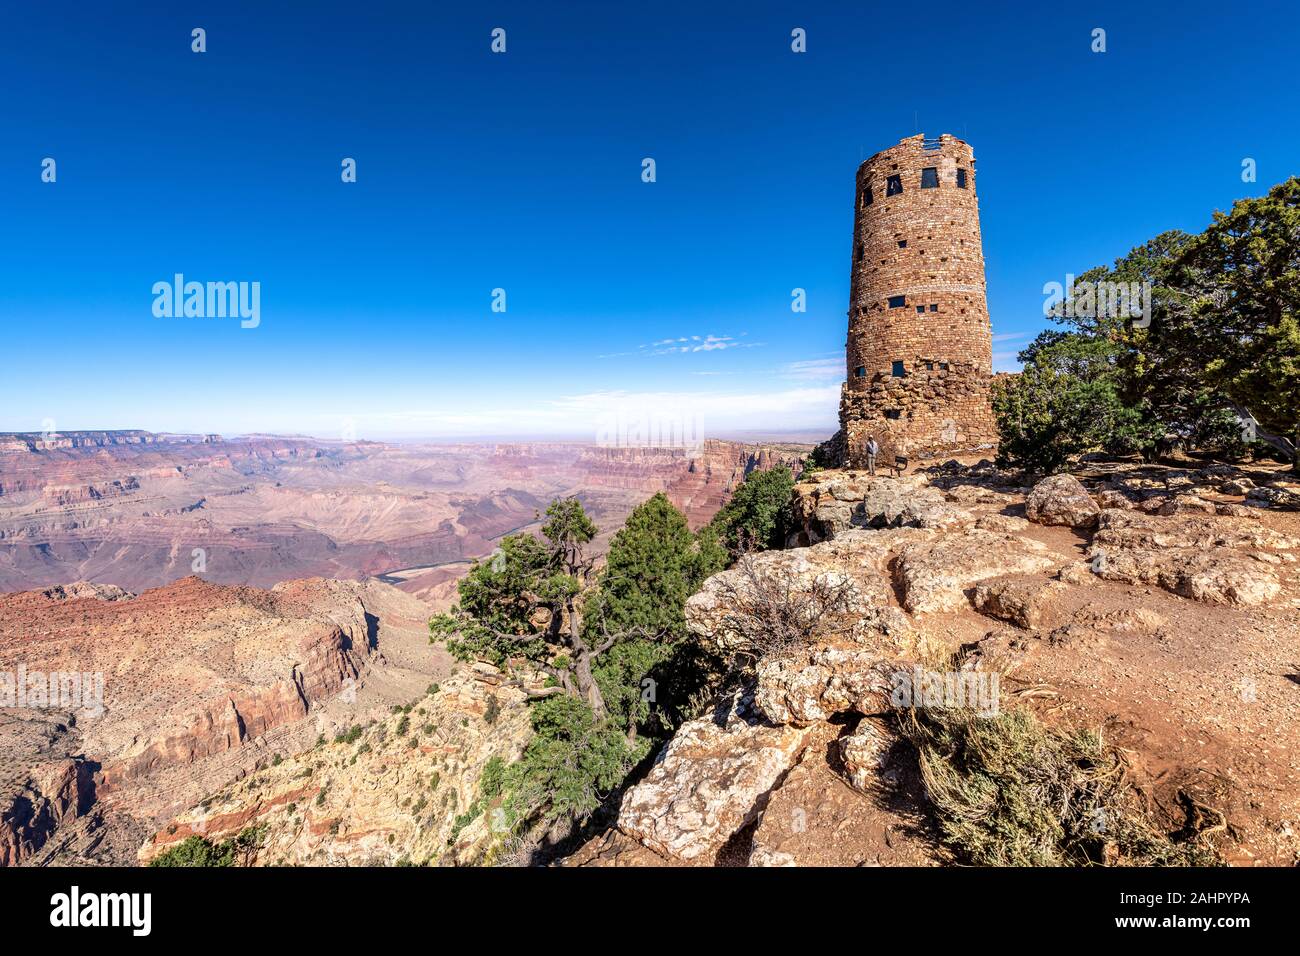 Una vista panorámica de la zona montañosa del desierto Grand Canyon View Atalaya enmarcada contra un cielo azul. Foto de stock